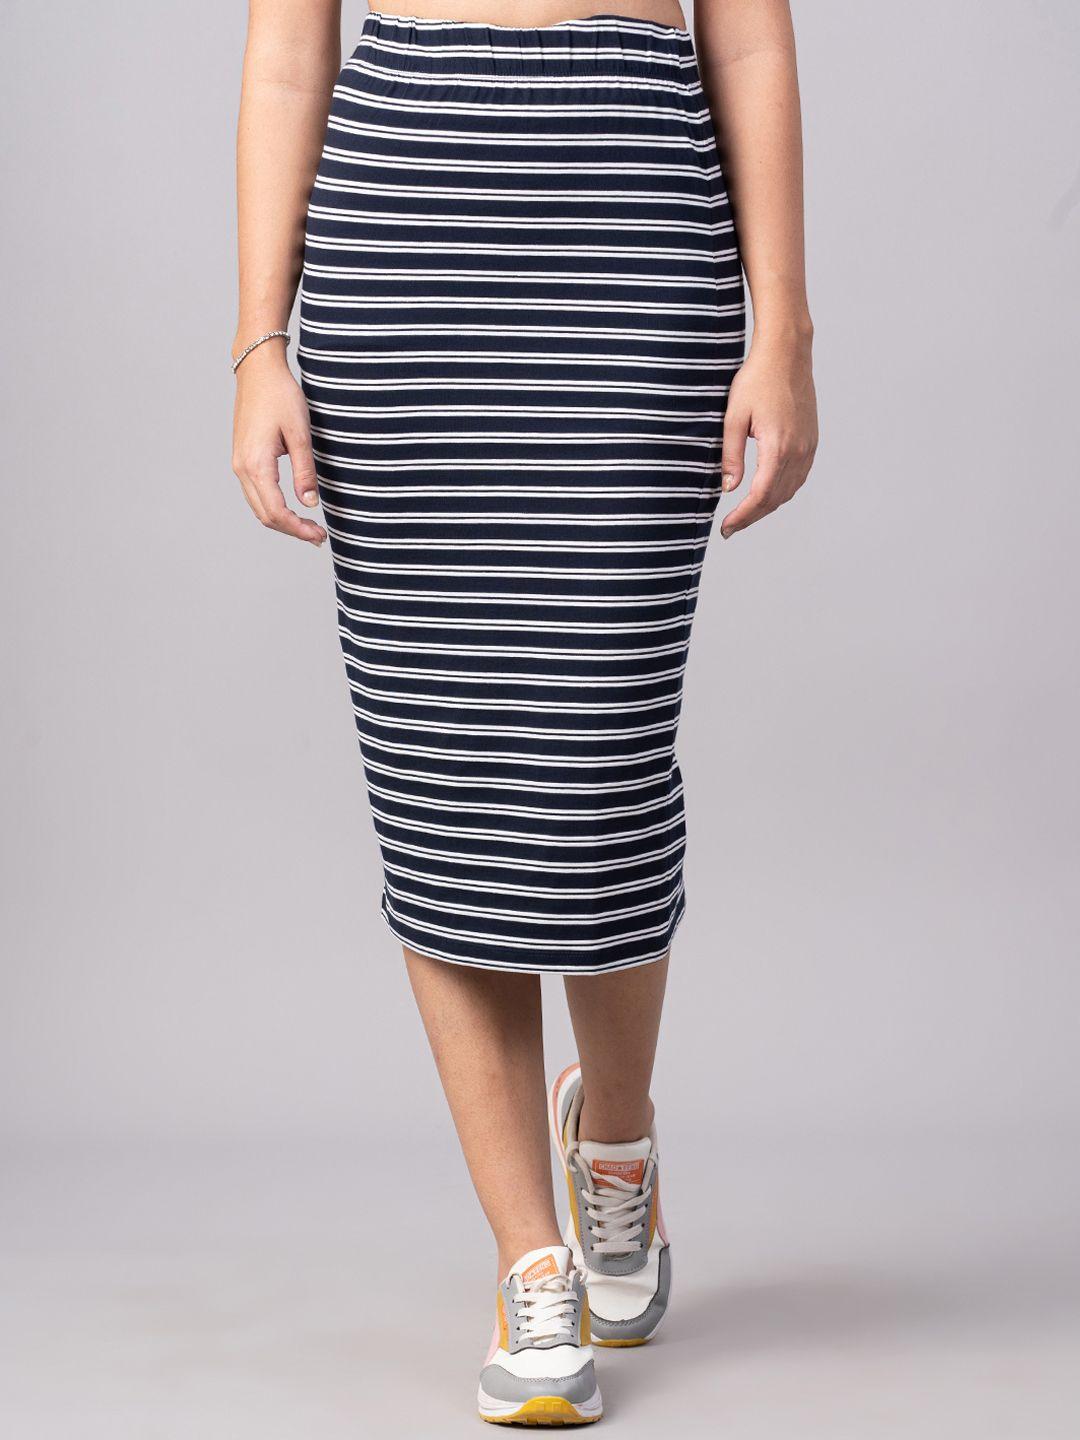 dressberry women navy blue striped pencil skirt